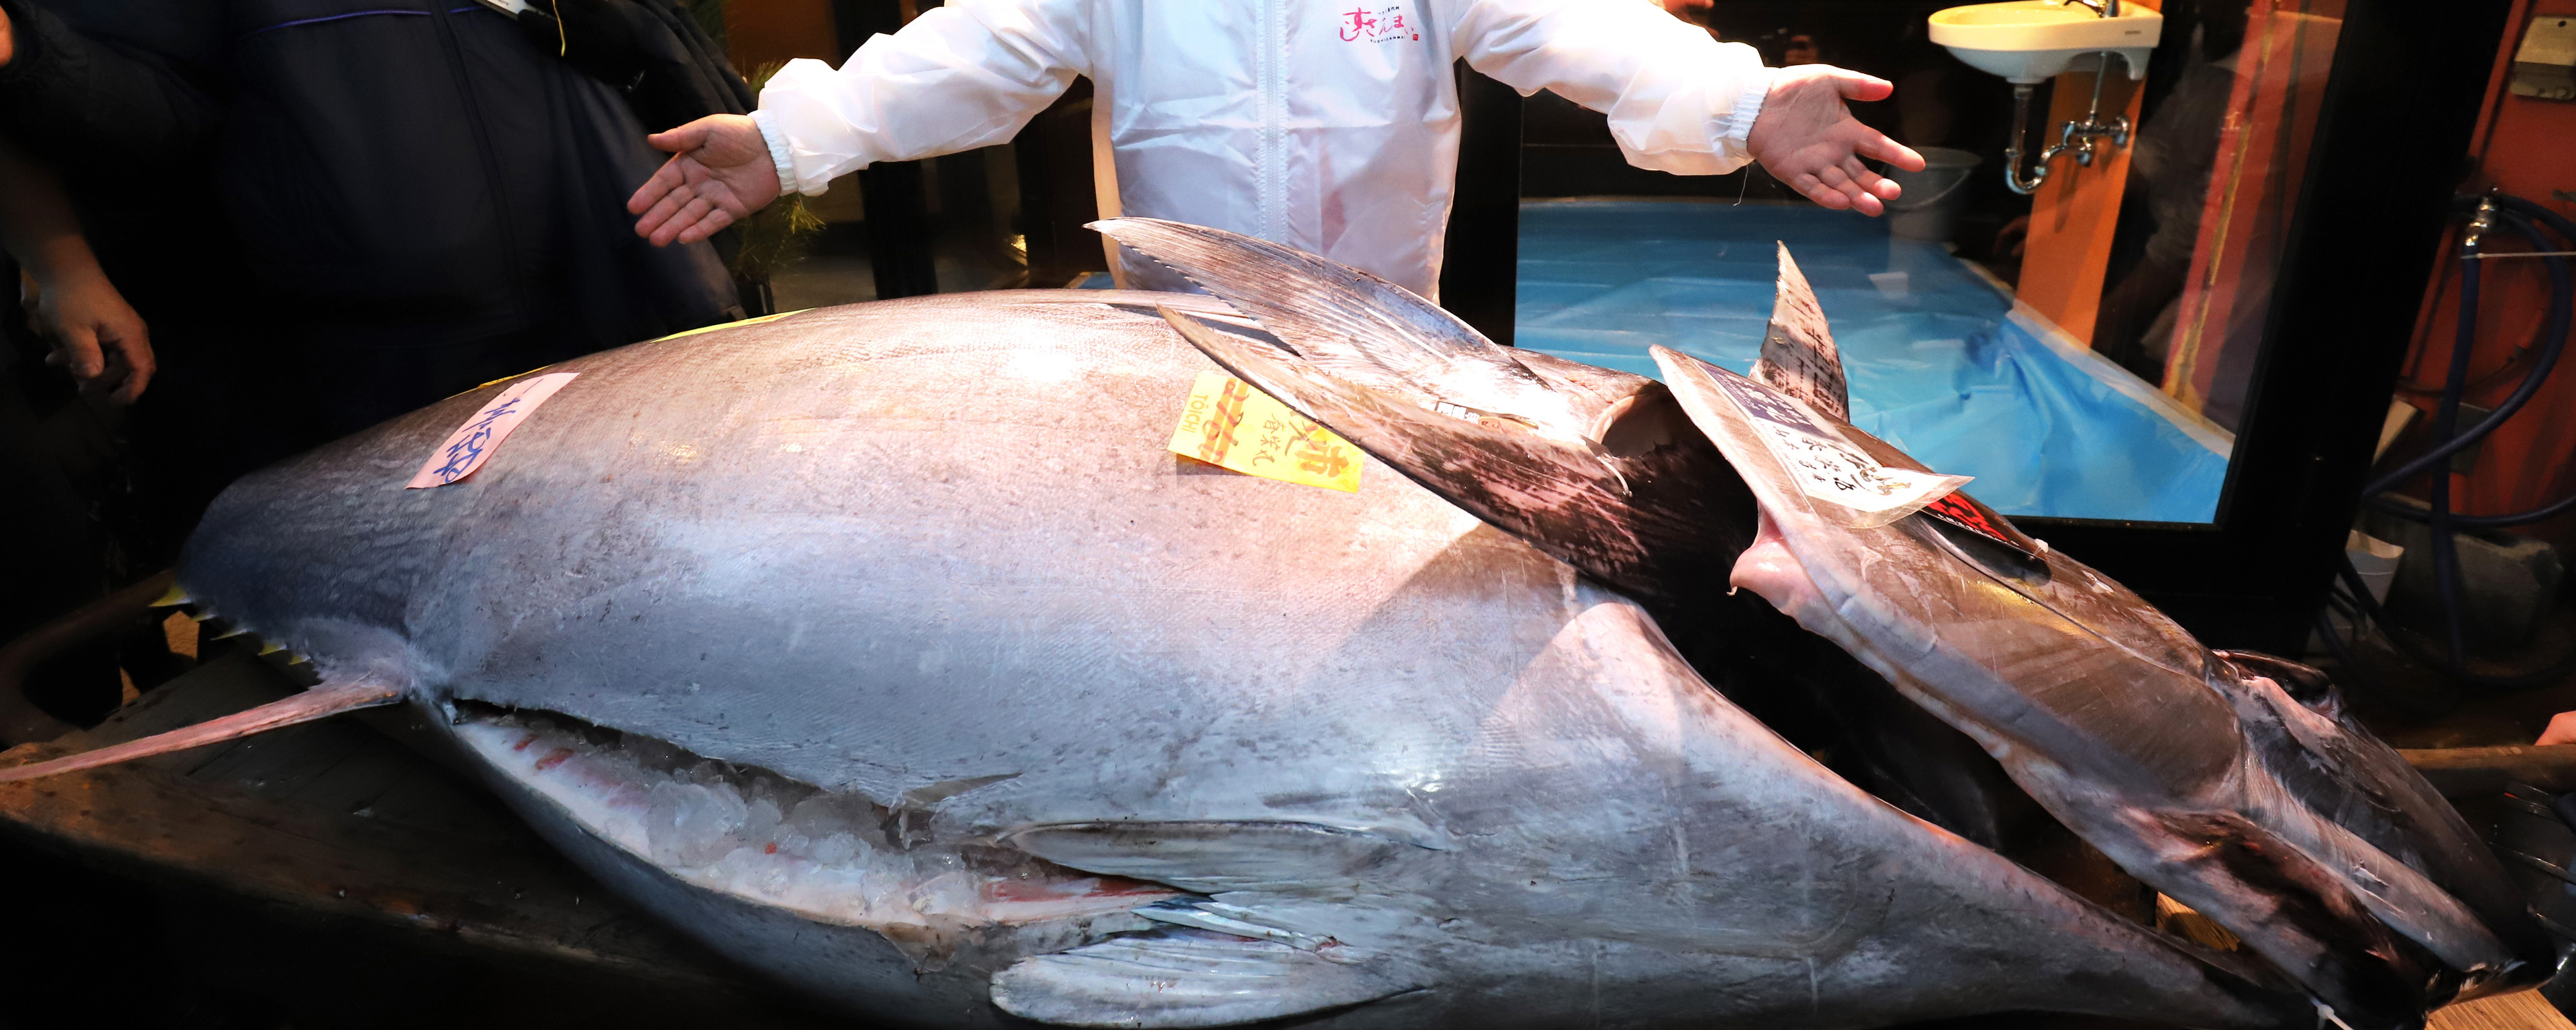 212-килограммового тунца продали за $271 тысячу на аукционе в Японии